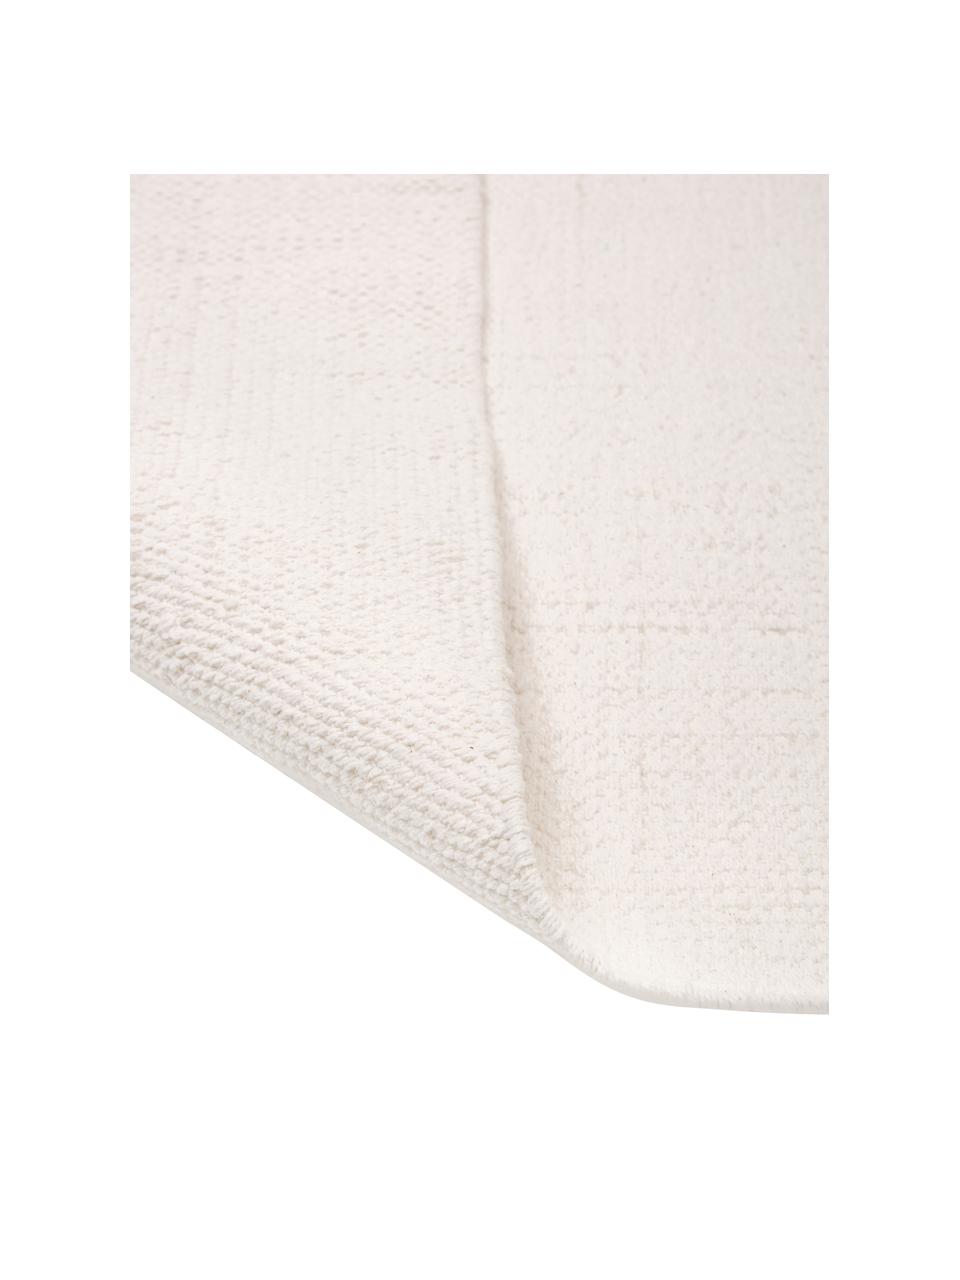 Tenký bavlněný koberec Agneta, ručně tkaný, Krémově bílá